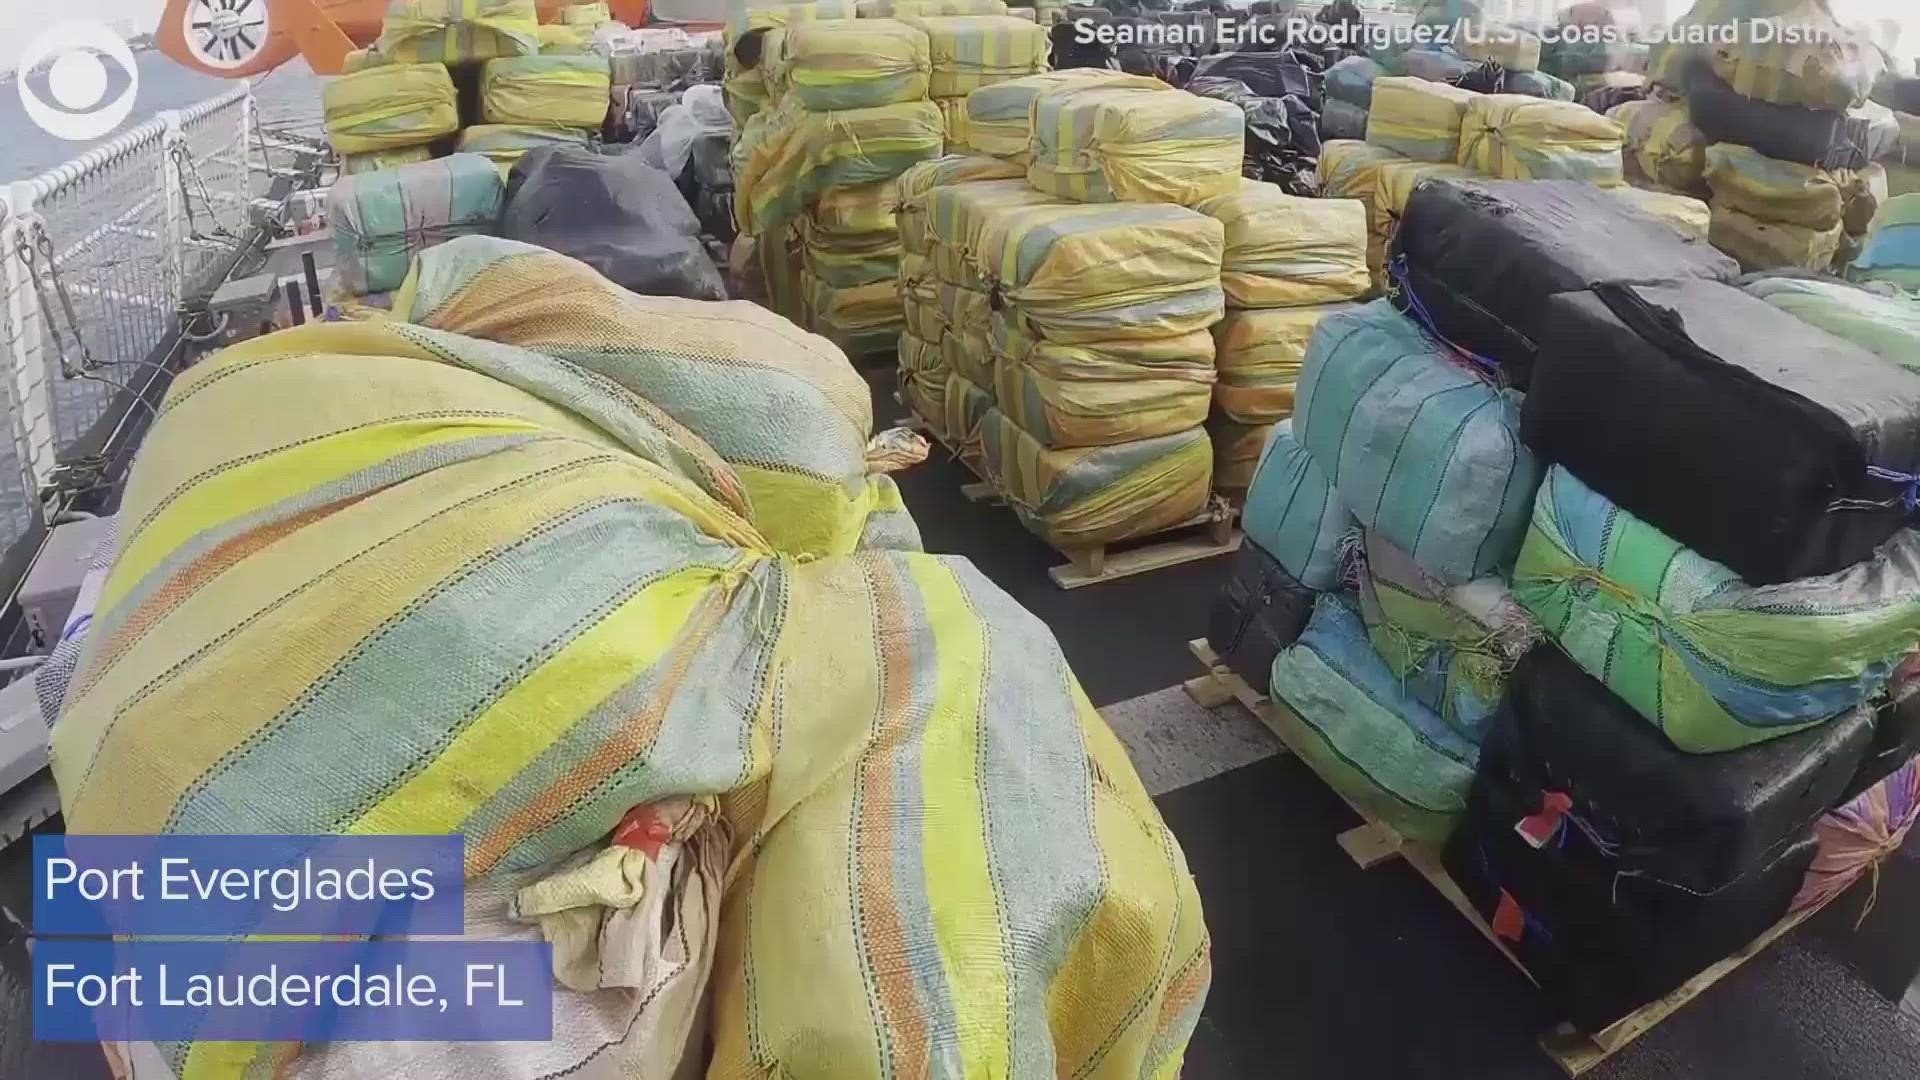 The massive drug seizure was offloaded in Port Everglades.